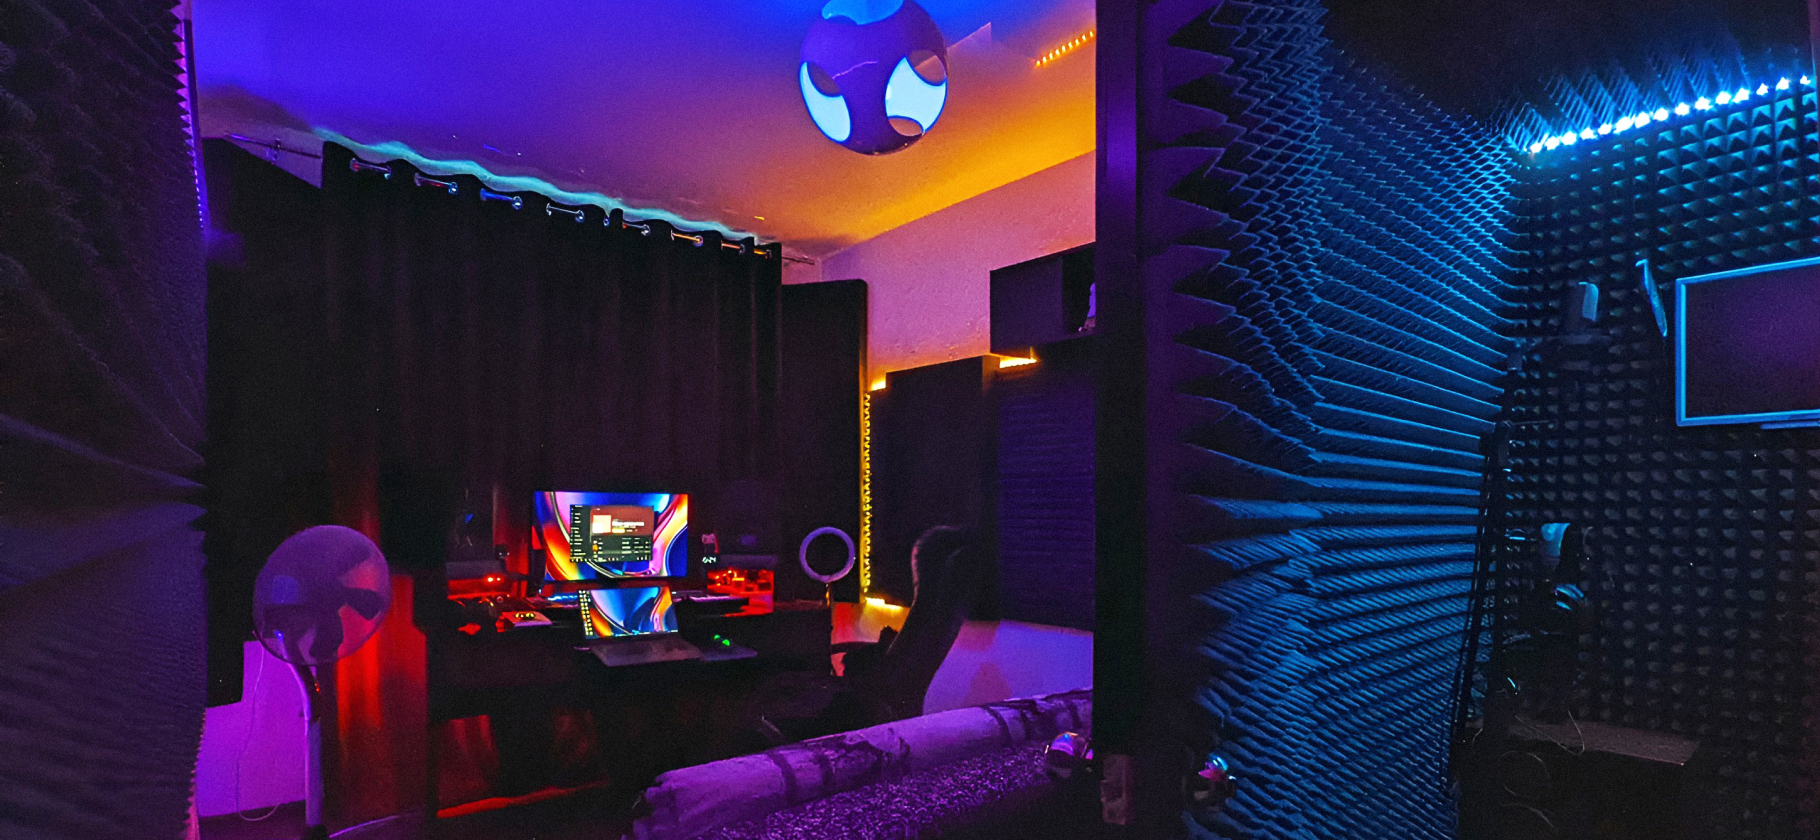 Рабочее место: до­машняя мини-студия звукоре­жиссера со све­тодиодным освещением